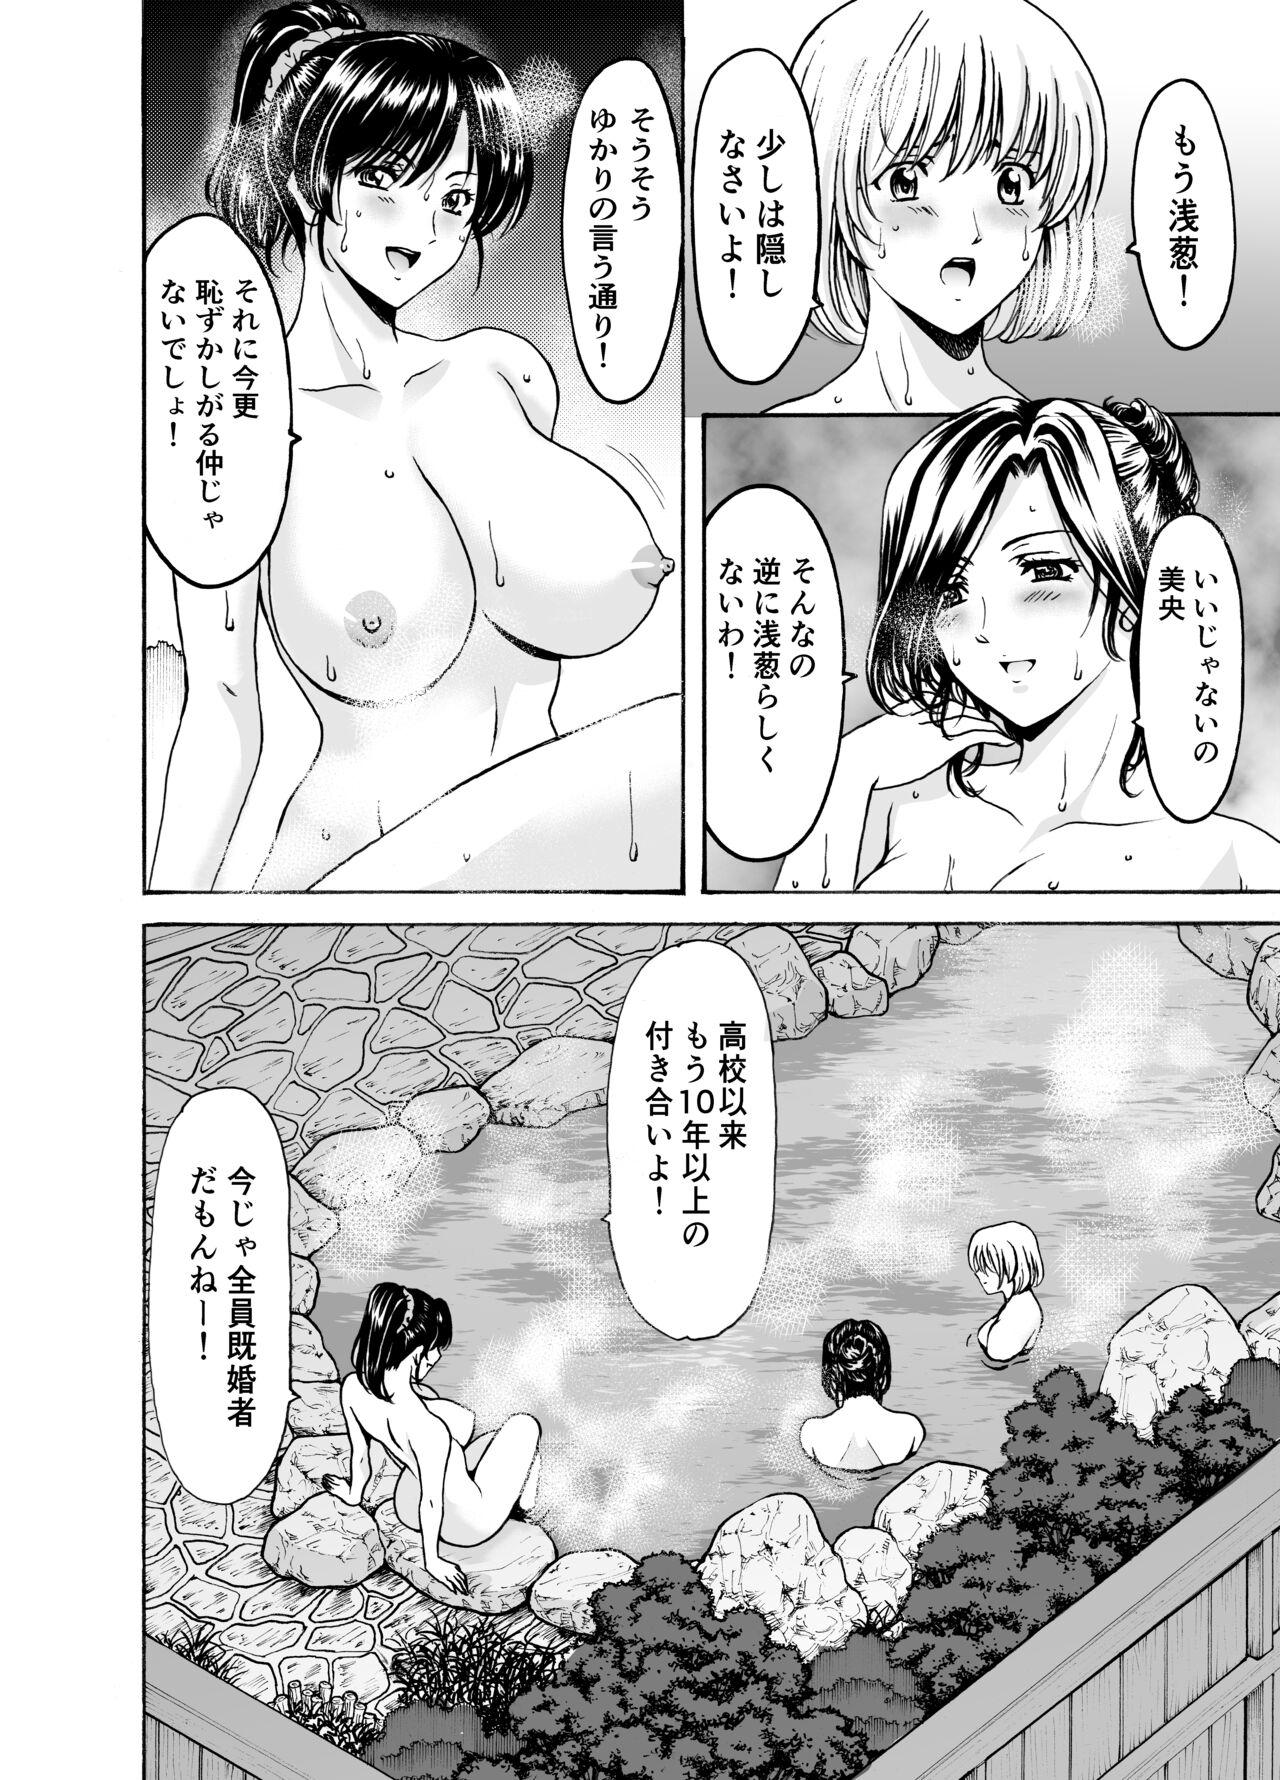 Boob Hitozuma × 3 Yukemuri Ryou Jou 1 - Original Deutsch - Page 4